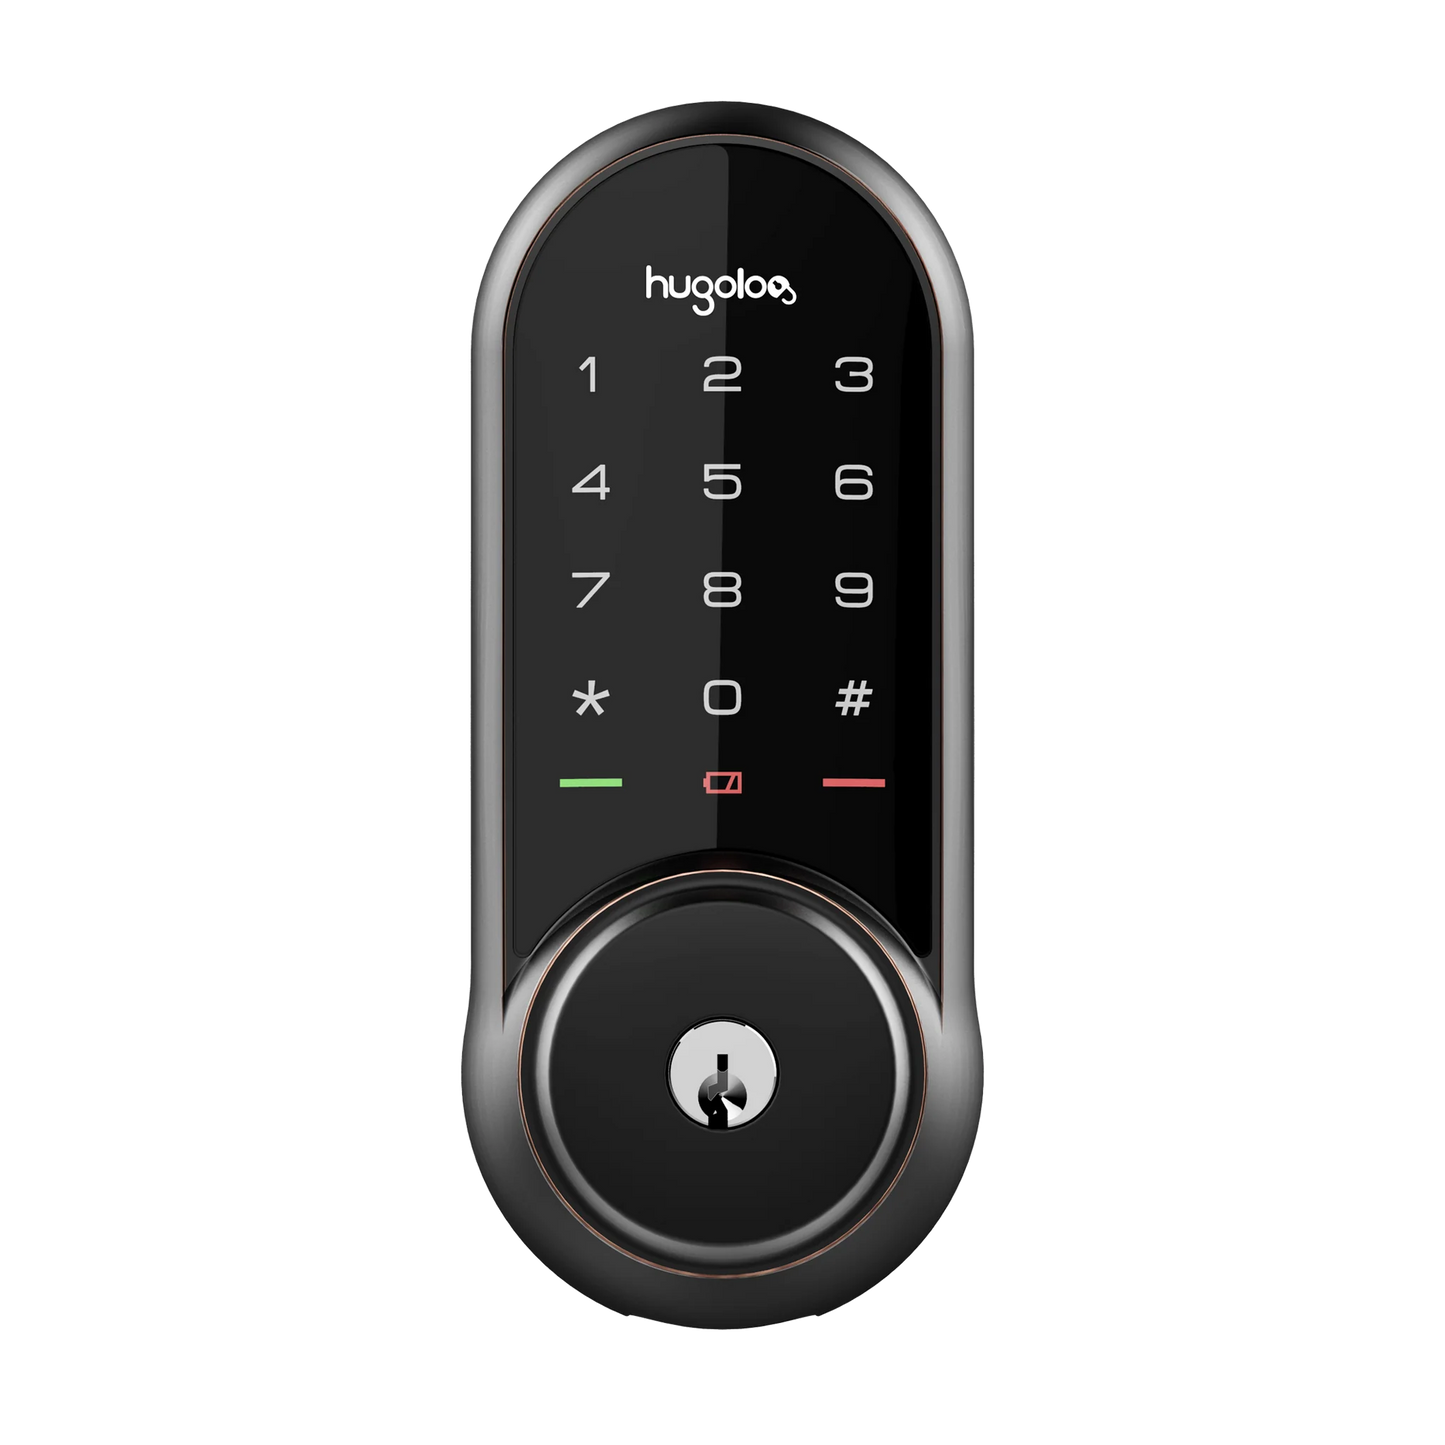 Hugolog 03 Touch screen Smart Deadbolt Lock with Phone App Access